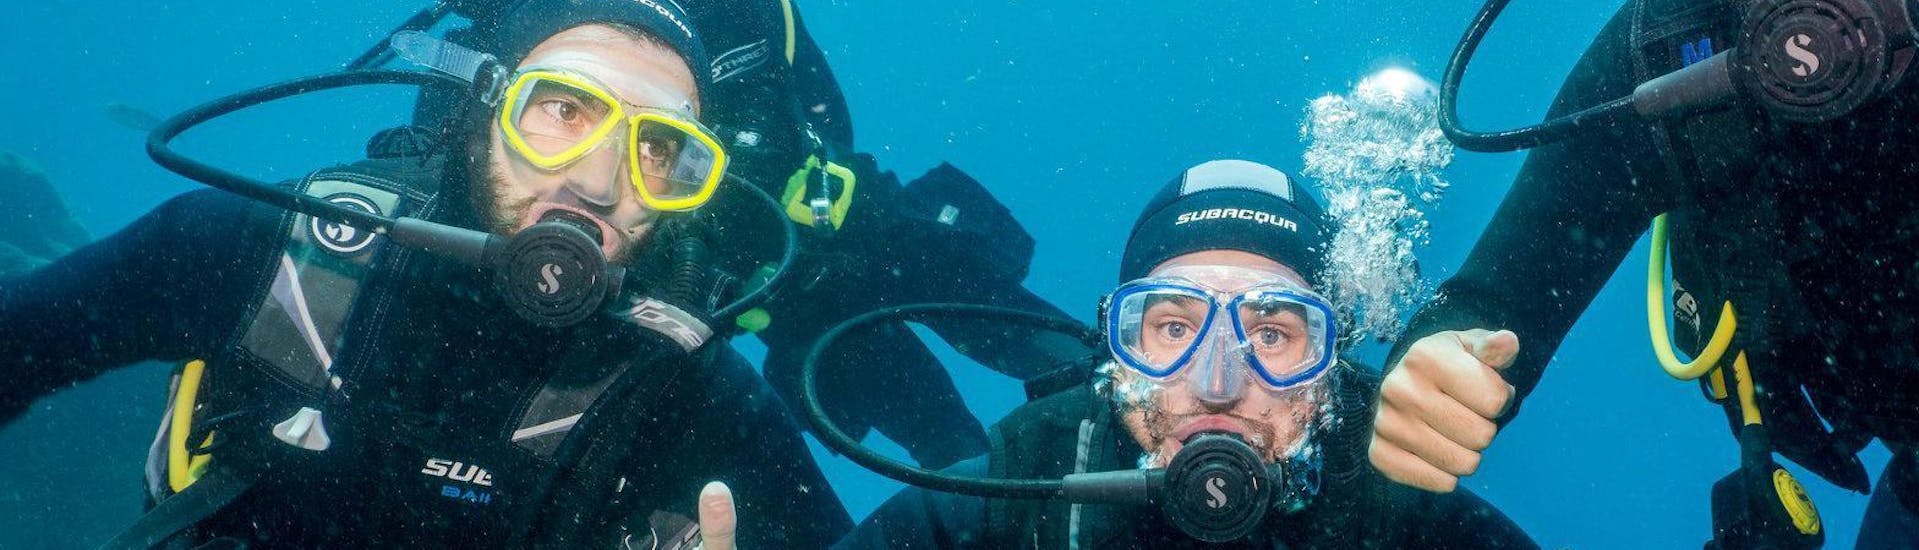 scuba-diving-course-for-beginners-padi-open-water-diver-aqua-marina-diving-tenerife-hero